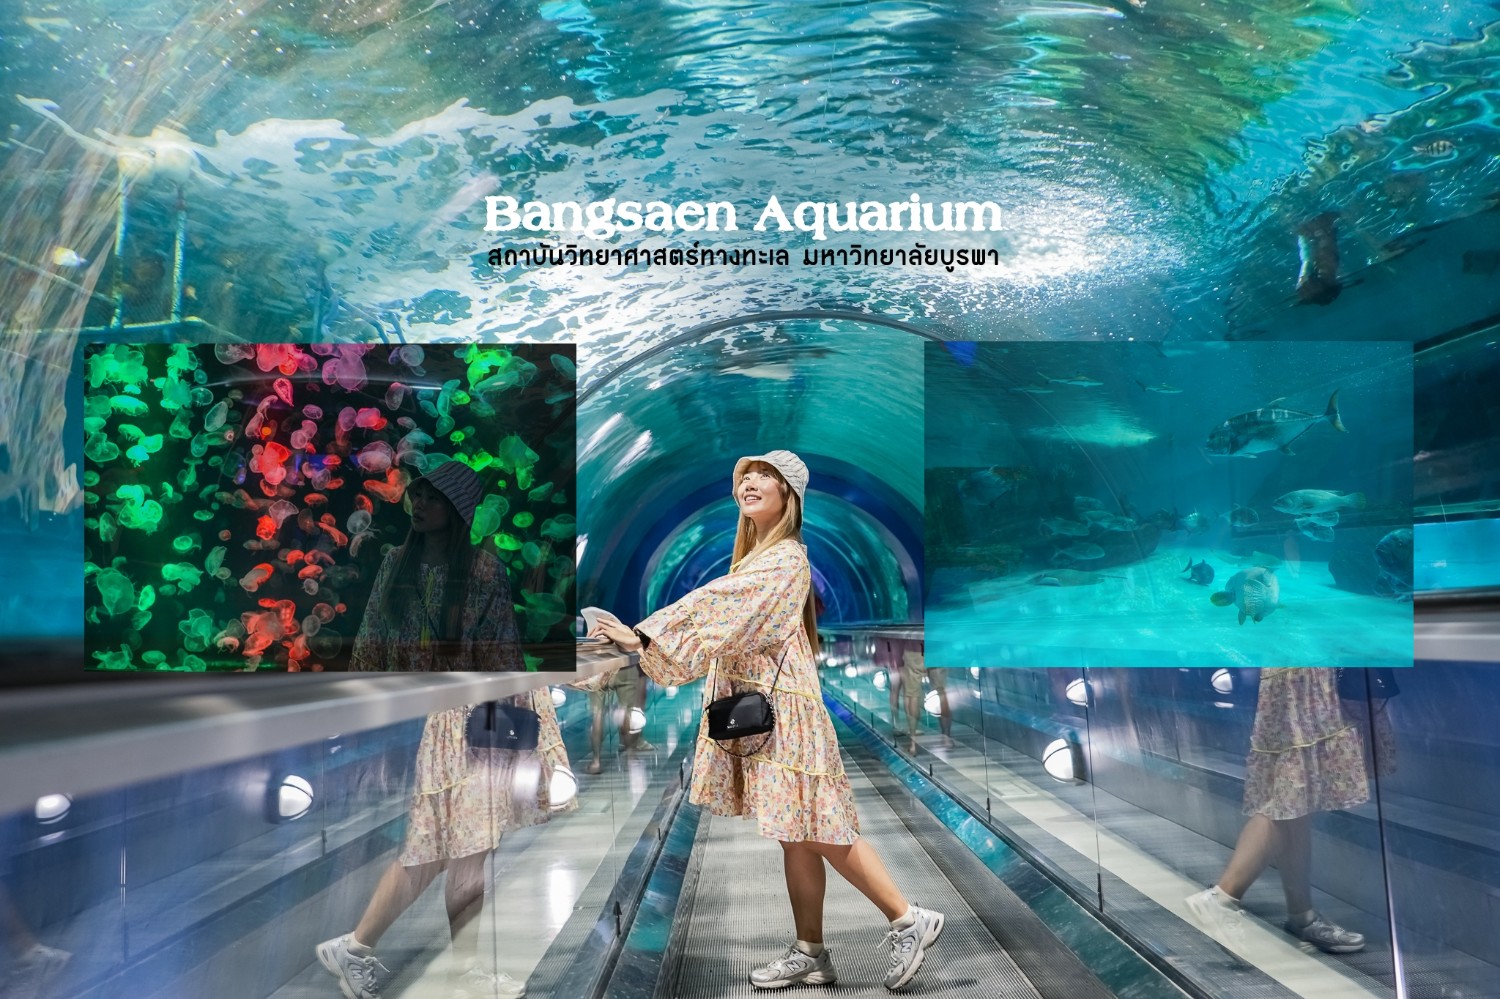 ผจญภัยโลกใต้ท้องทะเล Bangsaen Aquarium บางแสน จ.ชลบุรี - Pantip